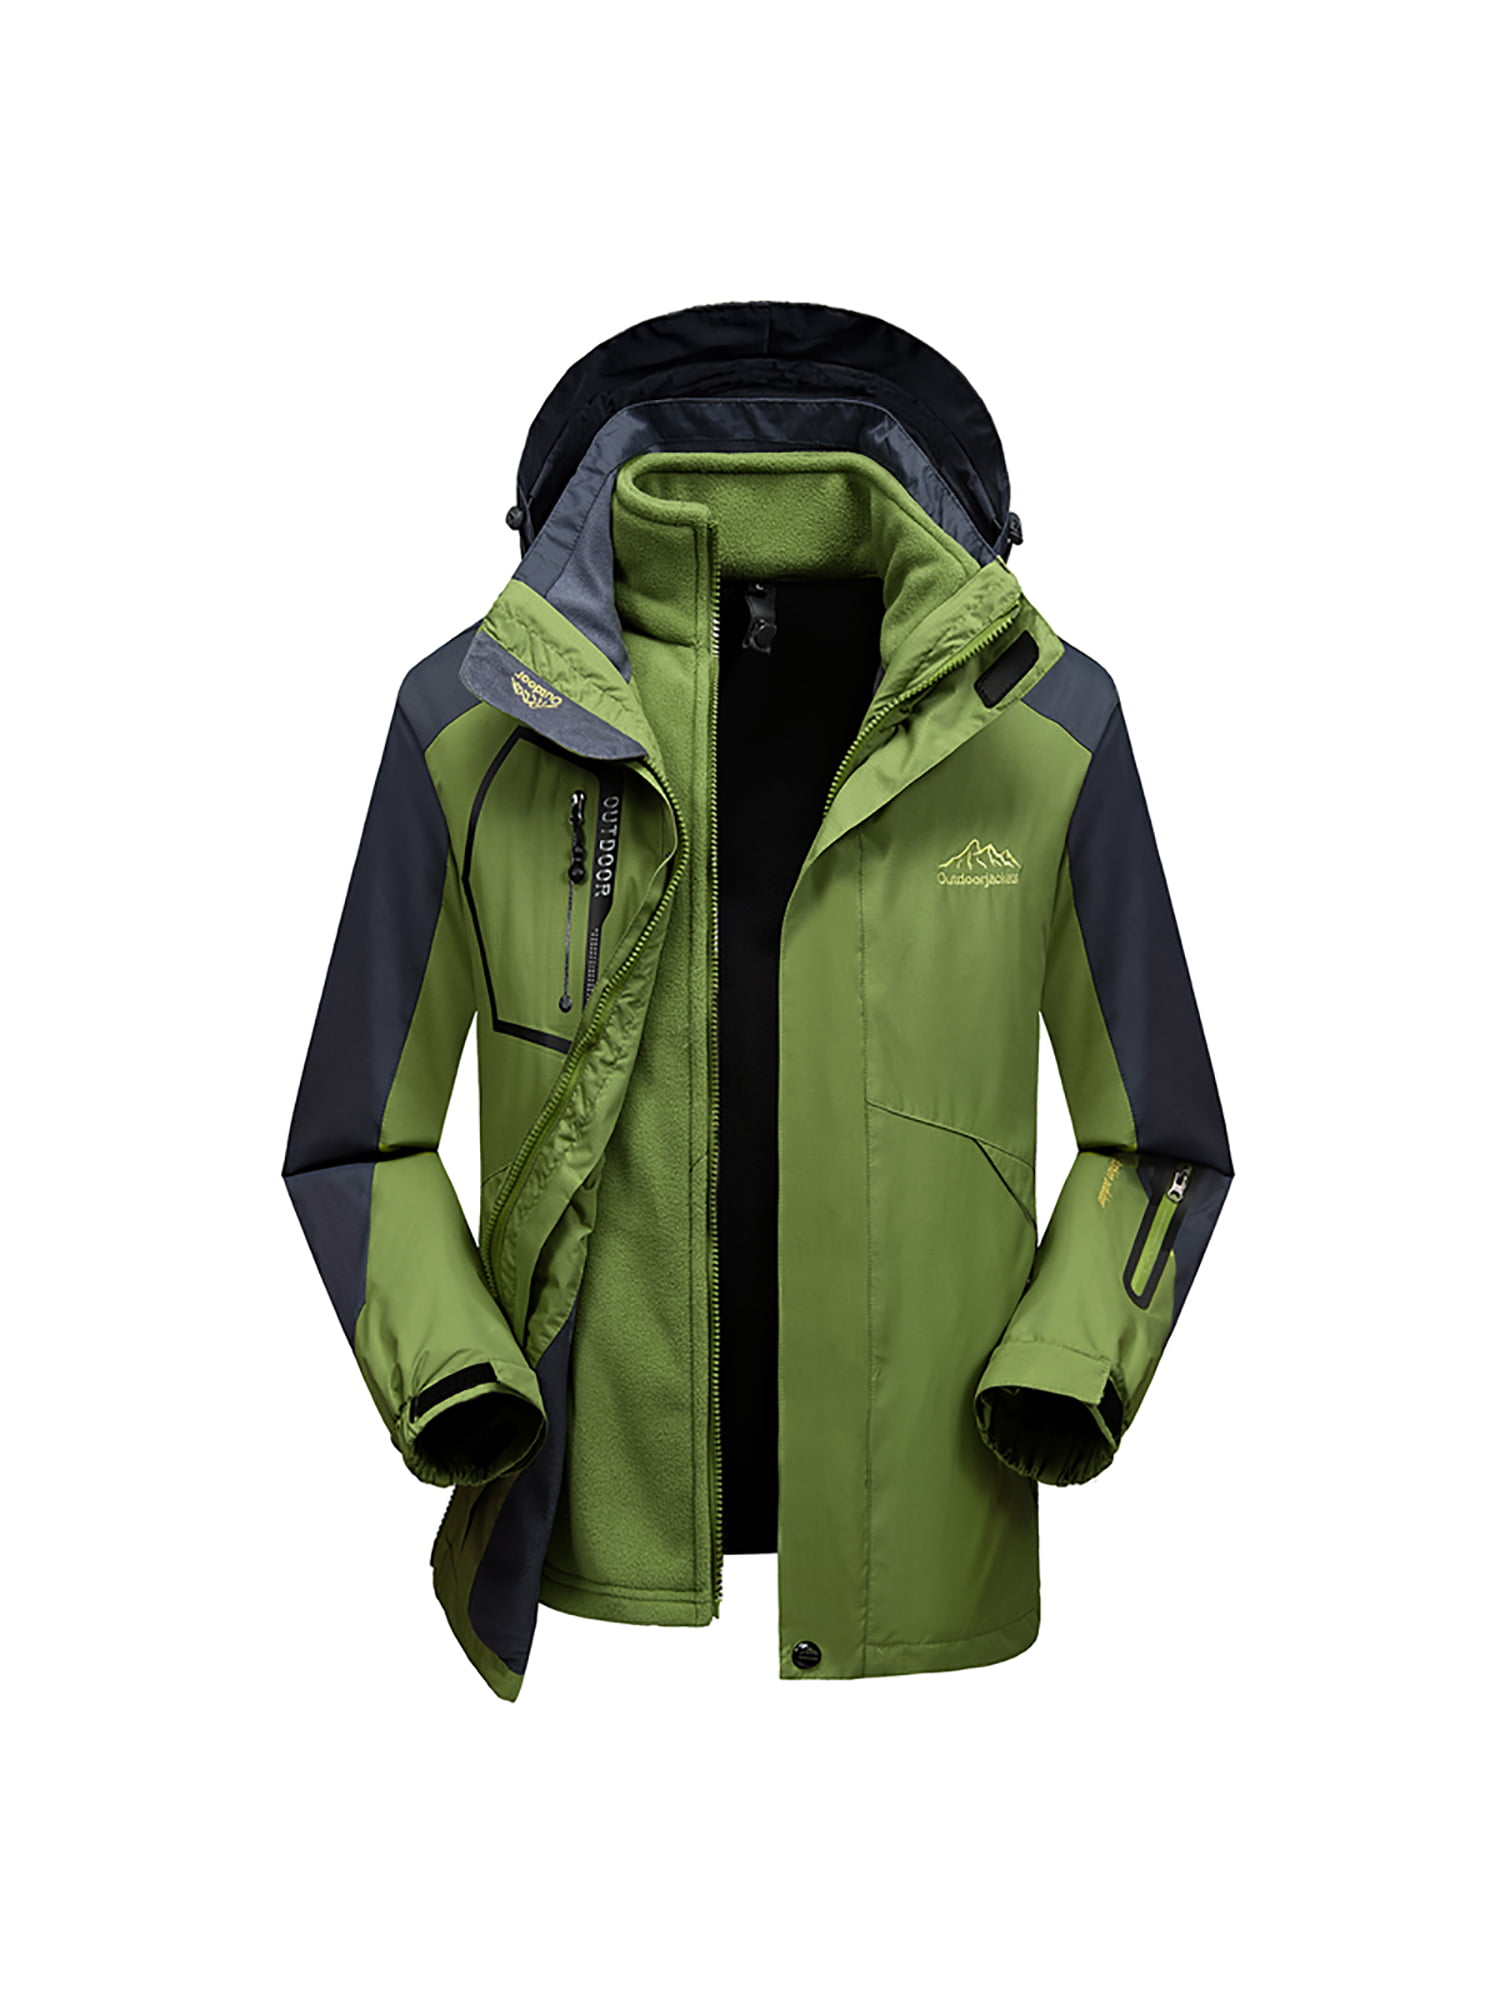 mansmoer Mens 3in1 Waterproof Breathable Coat Outdoor Camping Hiking Ski Jacket 